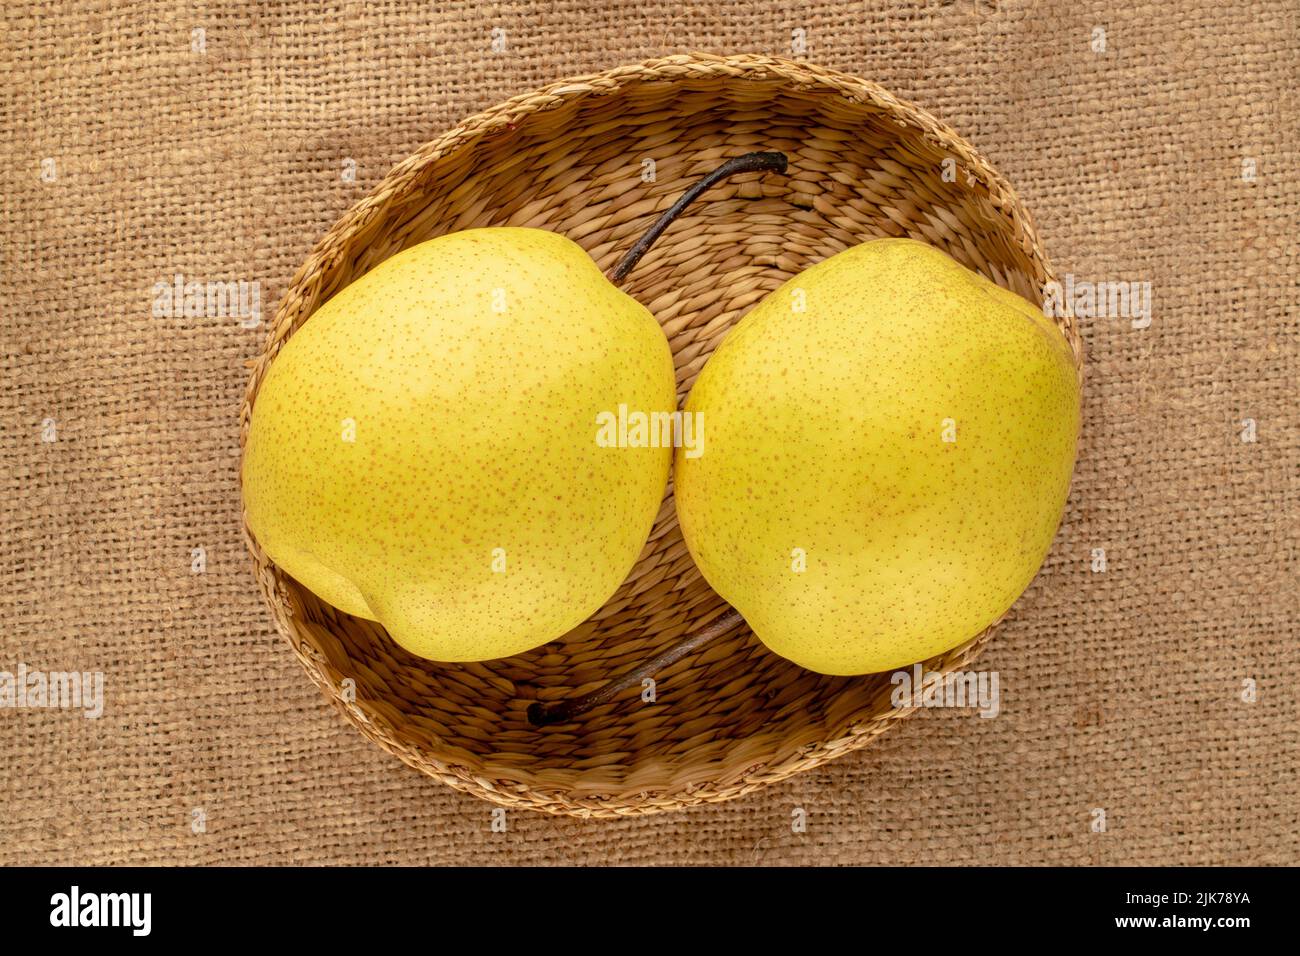 Deux poires jaunes douces et lumineuses avec une assiette de paille en toile de jute, vue rapprochée, vue de dessus. Banque D'Images